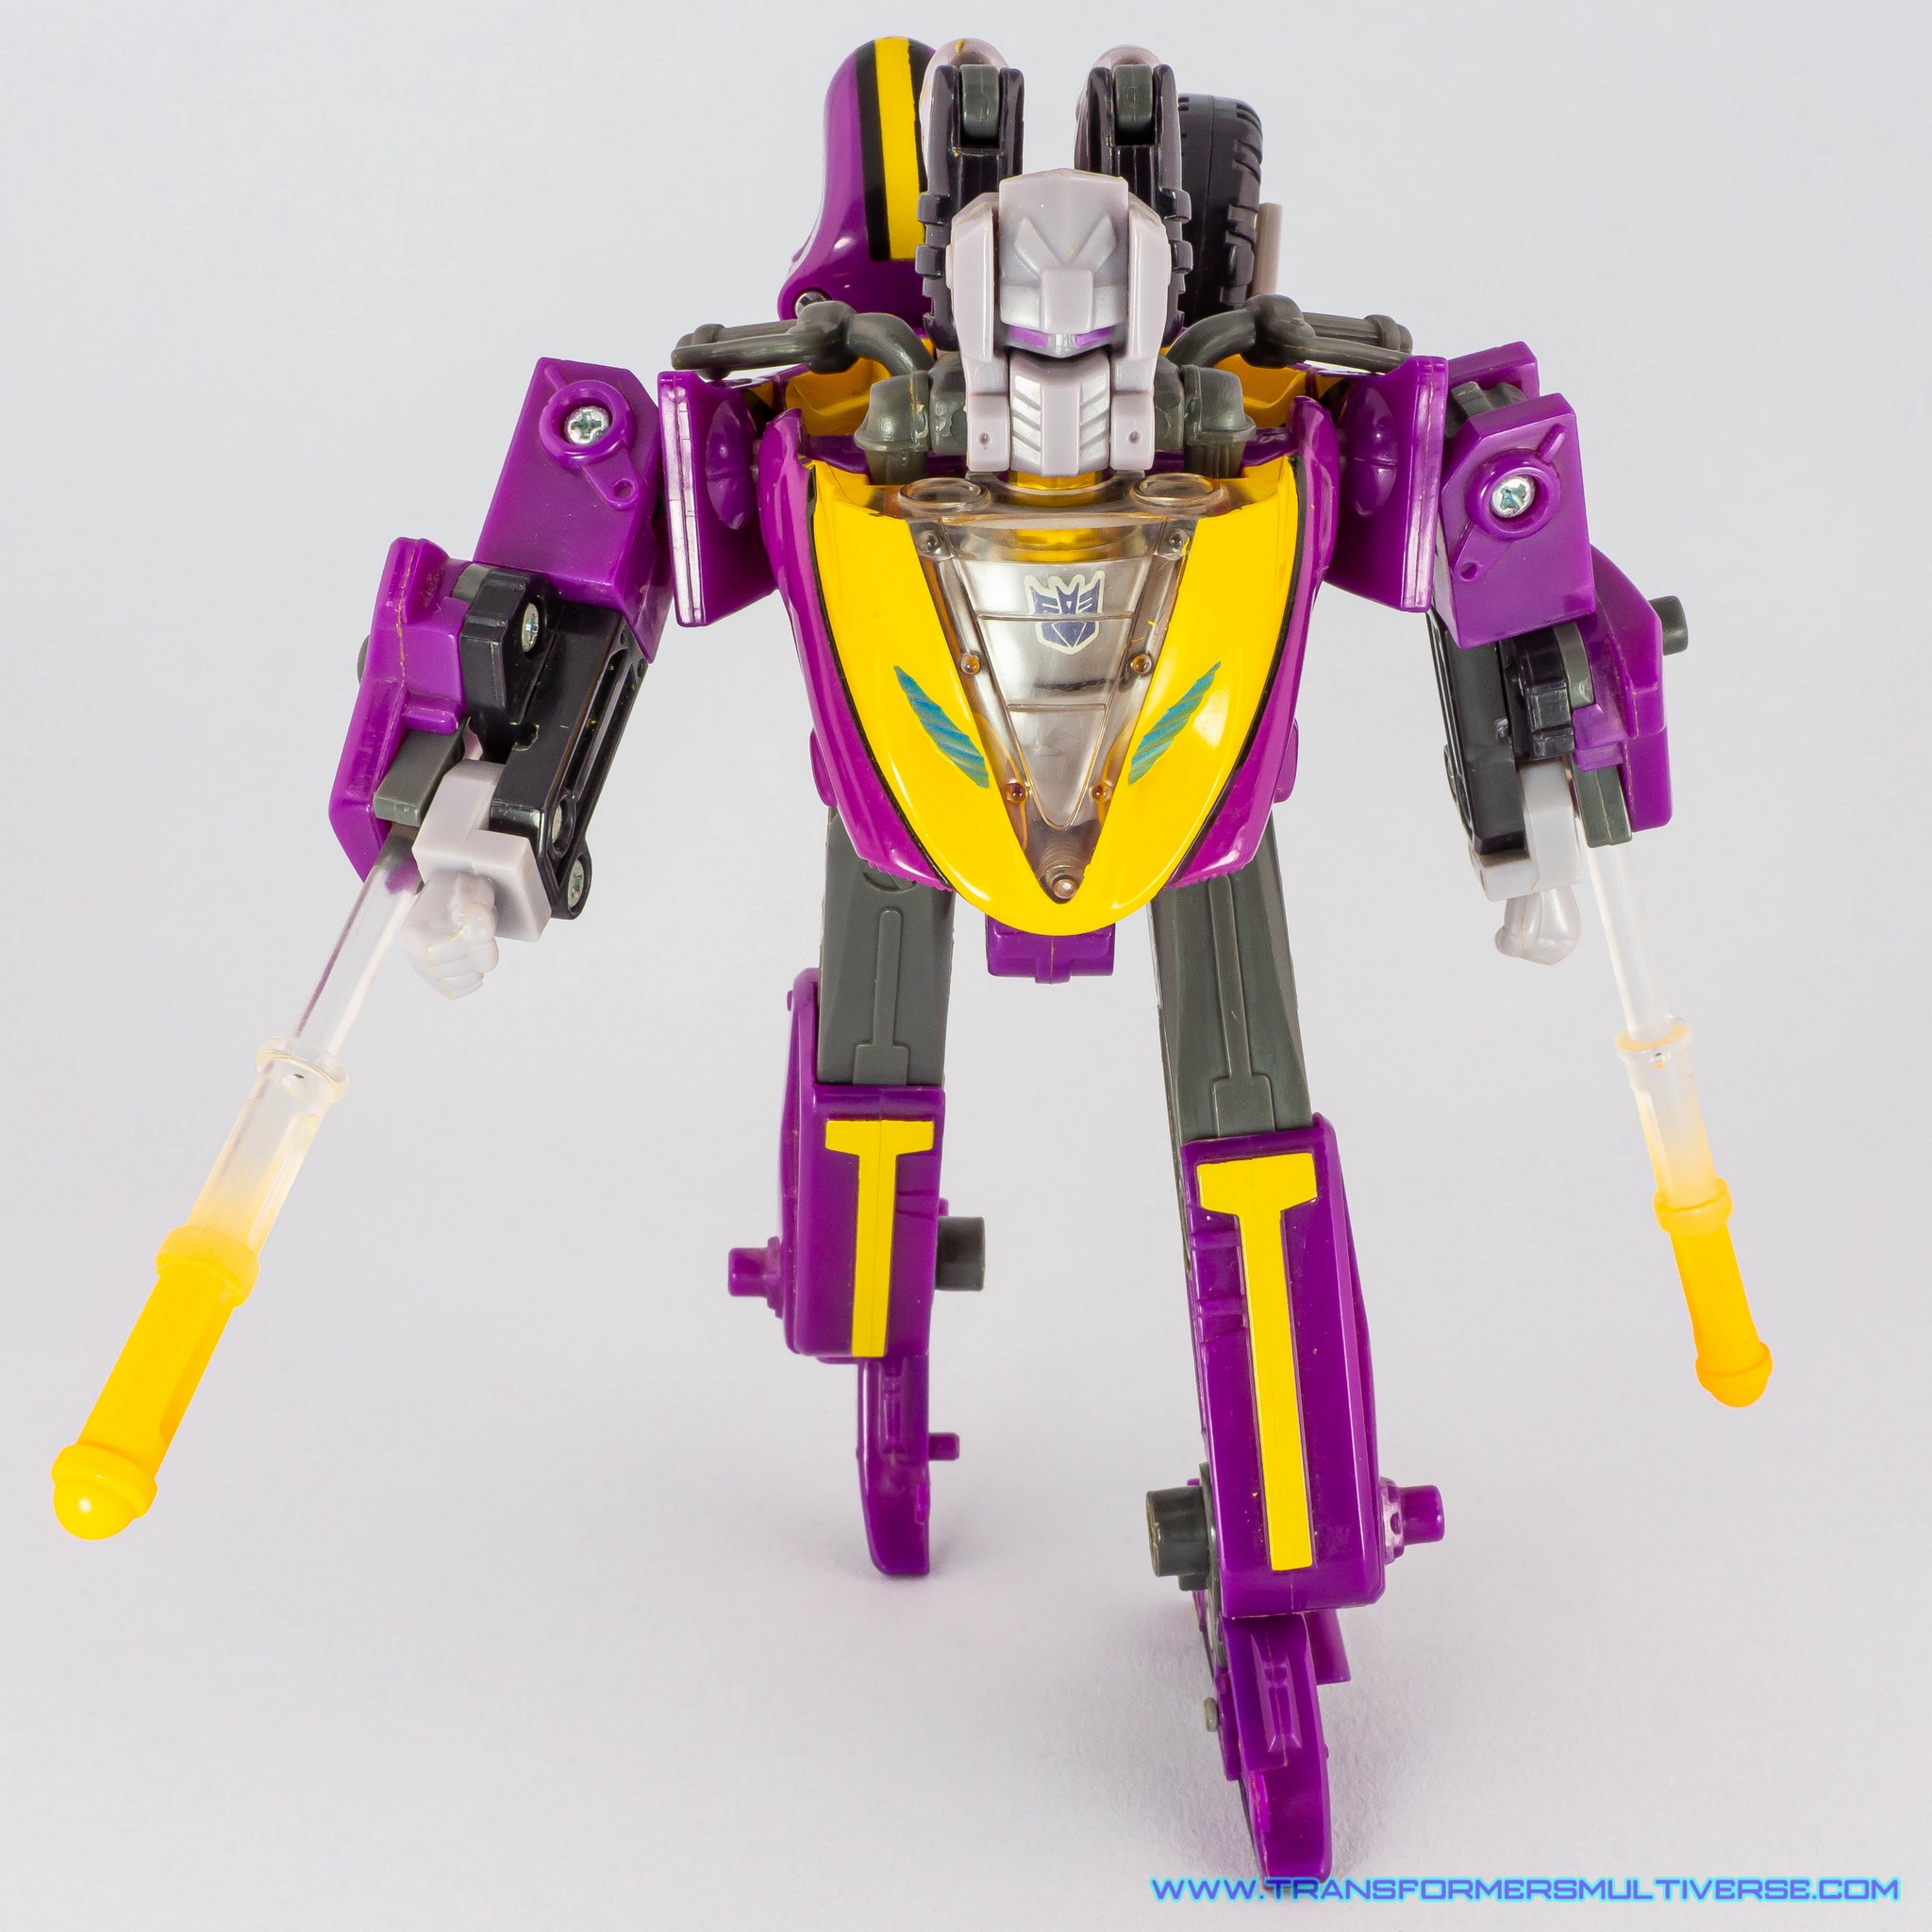 Transformers Armada Sideways Decepticon mode, fan head transformation 1